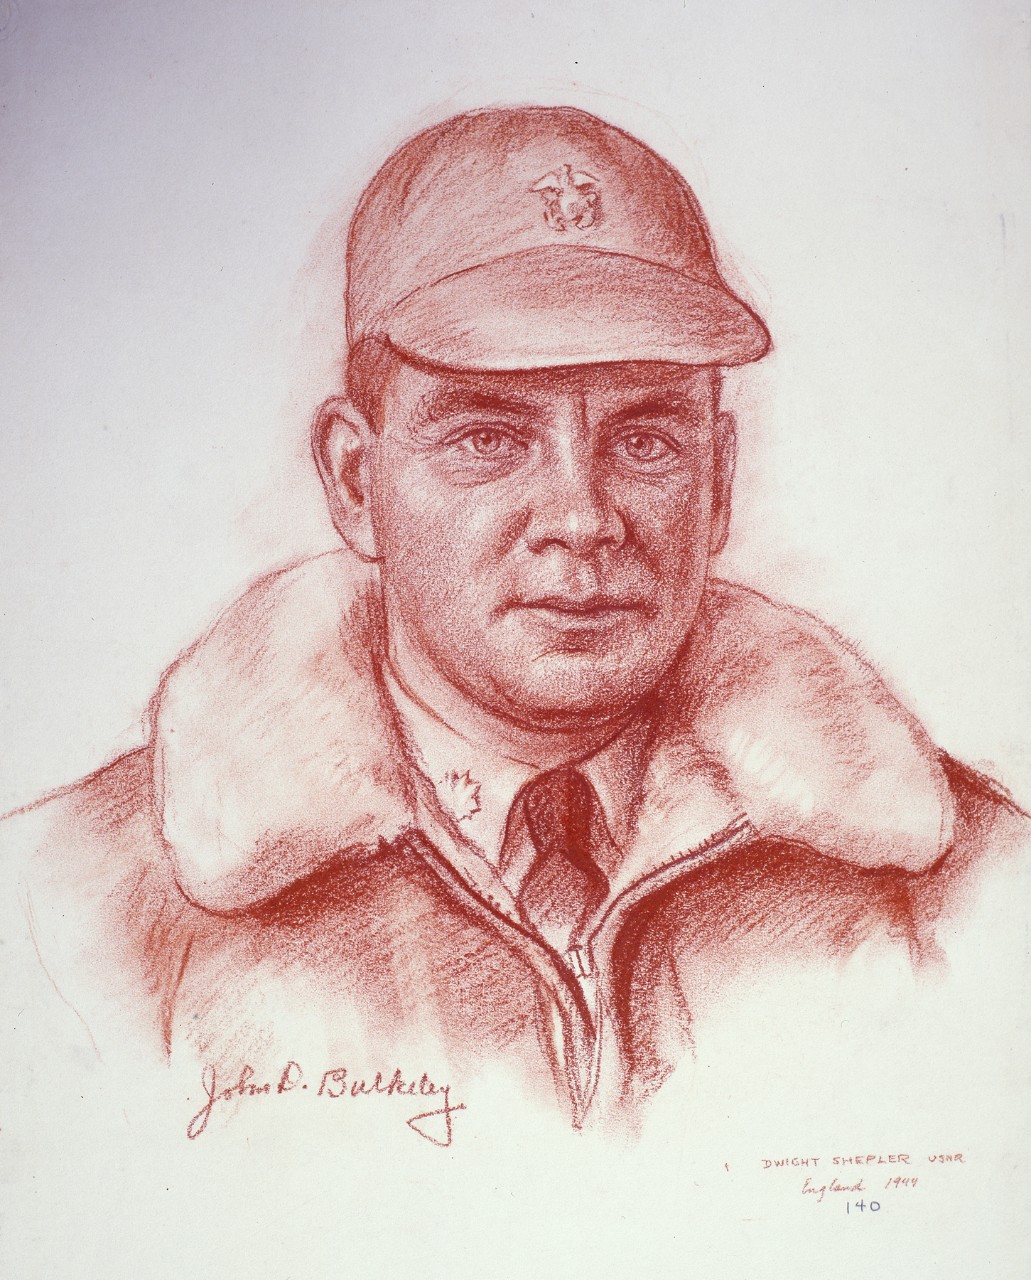 Lt. Commander John D. Bulkeley